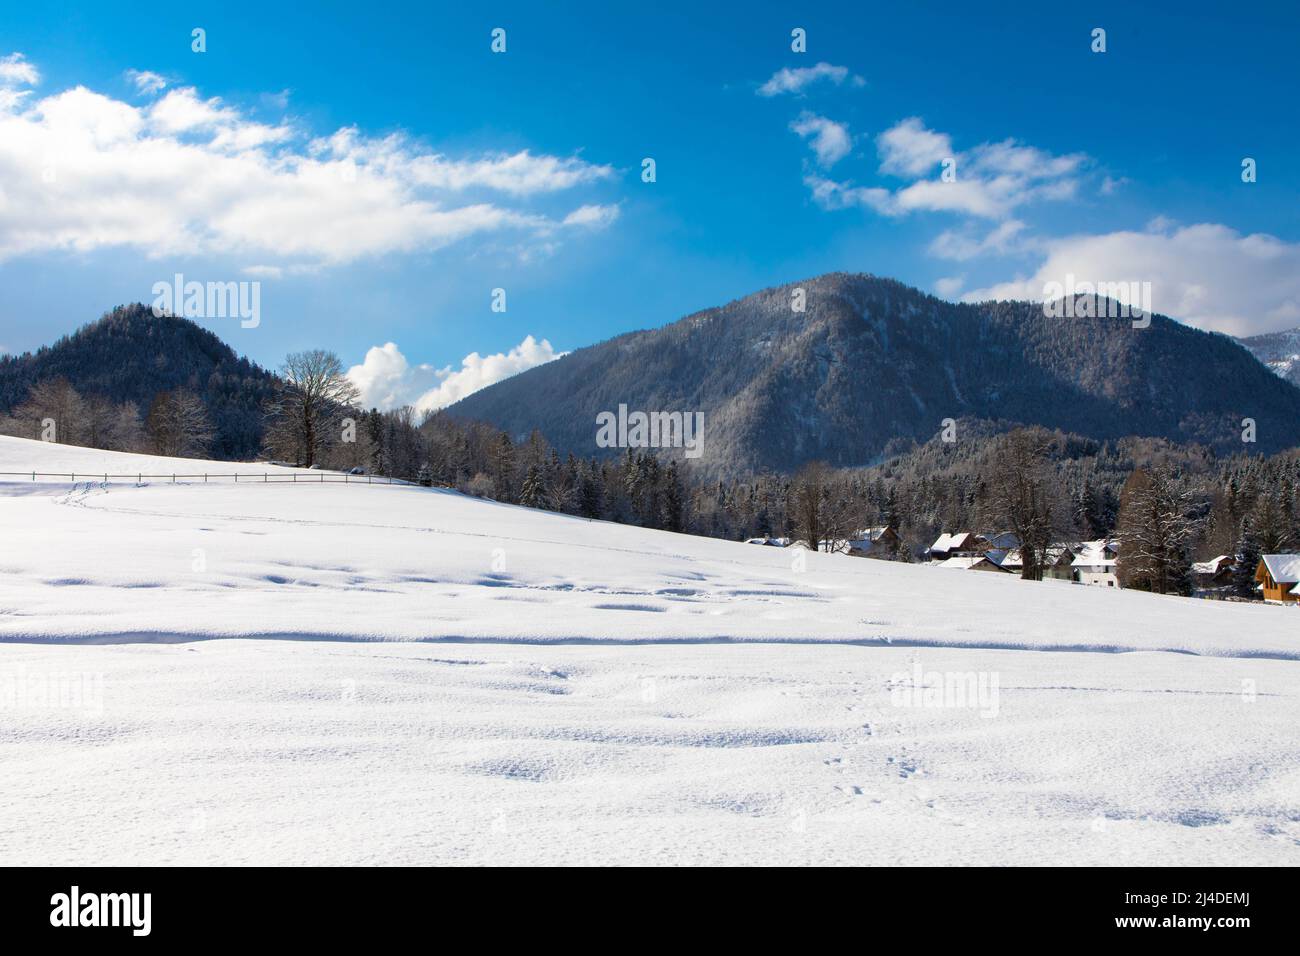 Giornata invernale nella stazione sciistica austriaca alpina con cielo nuvoloso e neve bianca brillante. Steiermark, Austria superiore Foto Stock